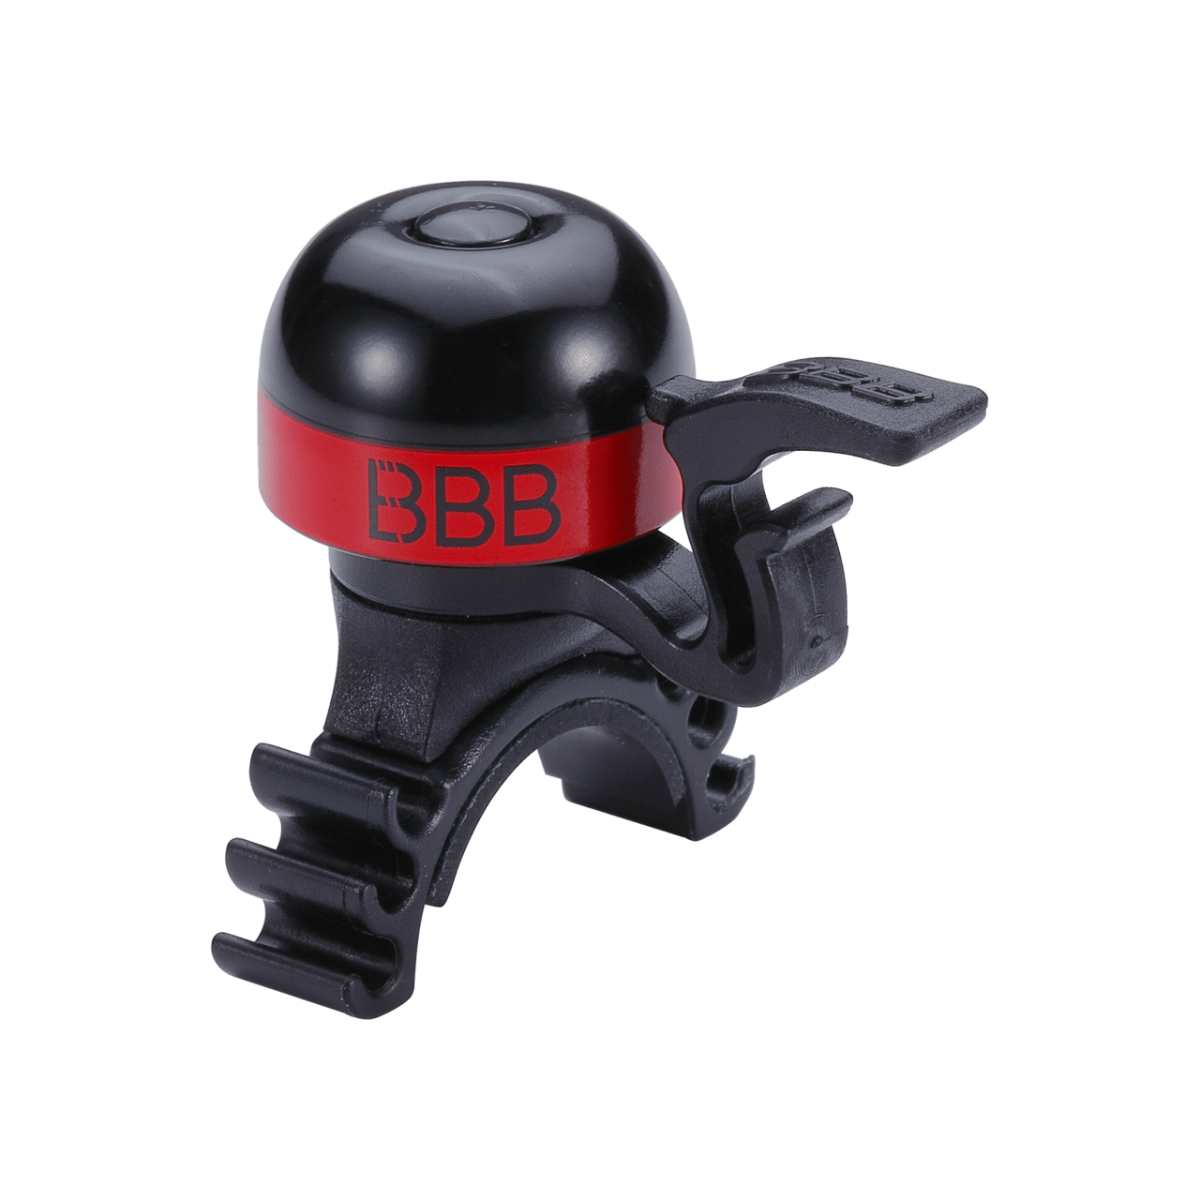 Zvans BBB BBB-16 bike bell minibell black/red